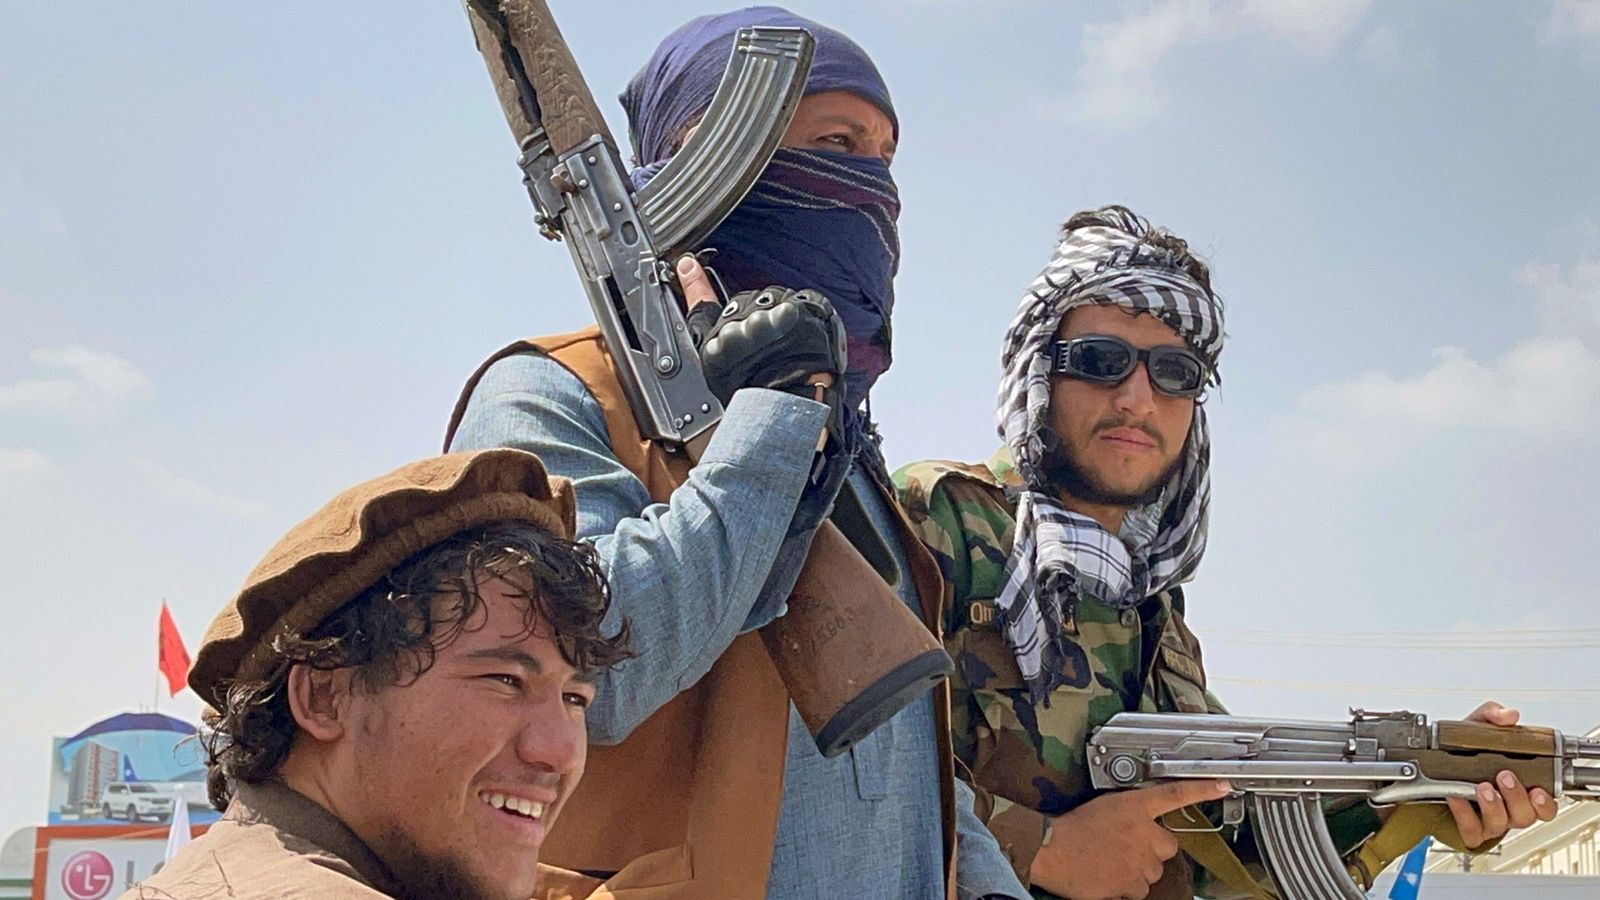 "Hvis vi ser deg, vil vi kutte hodet ditt", truer Taliban kristne i Afghanistan